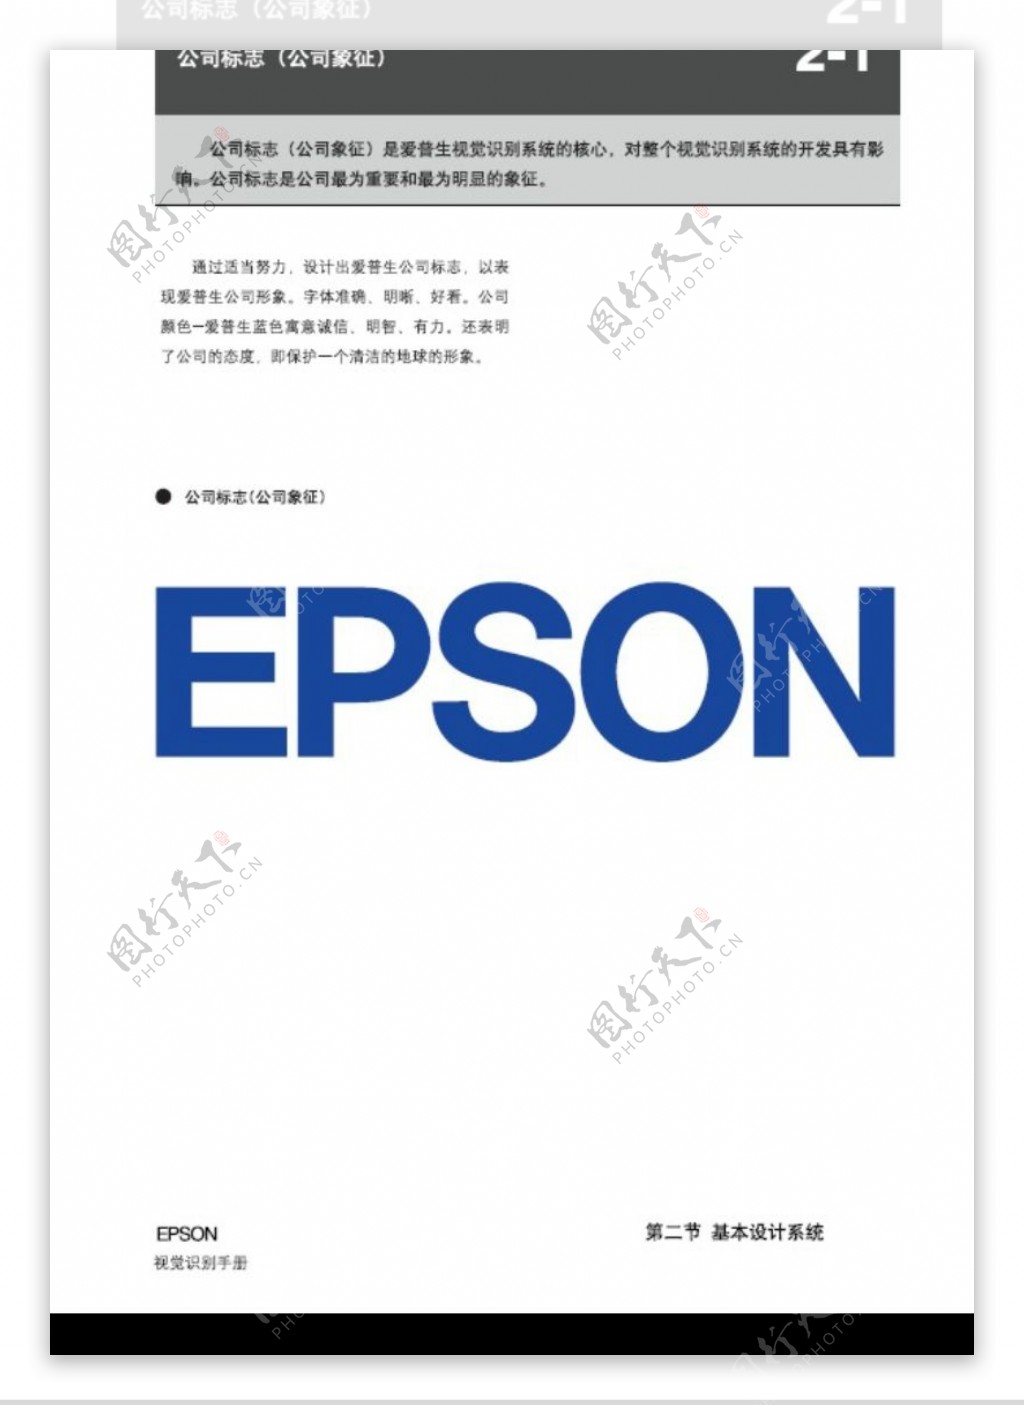 EPSON0010